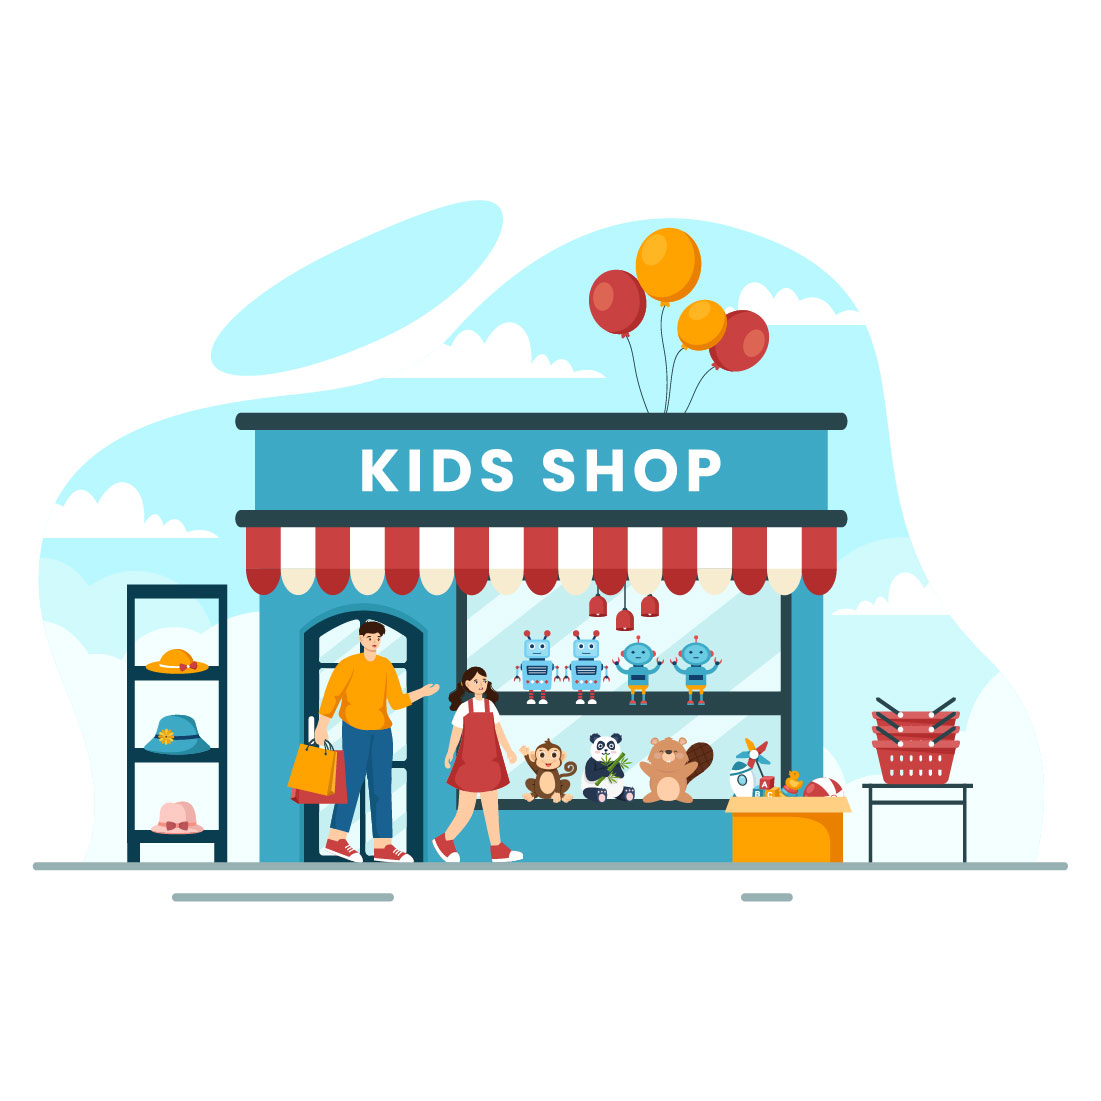 12 Kids Shop Illustration cover image.